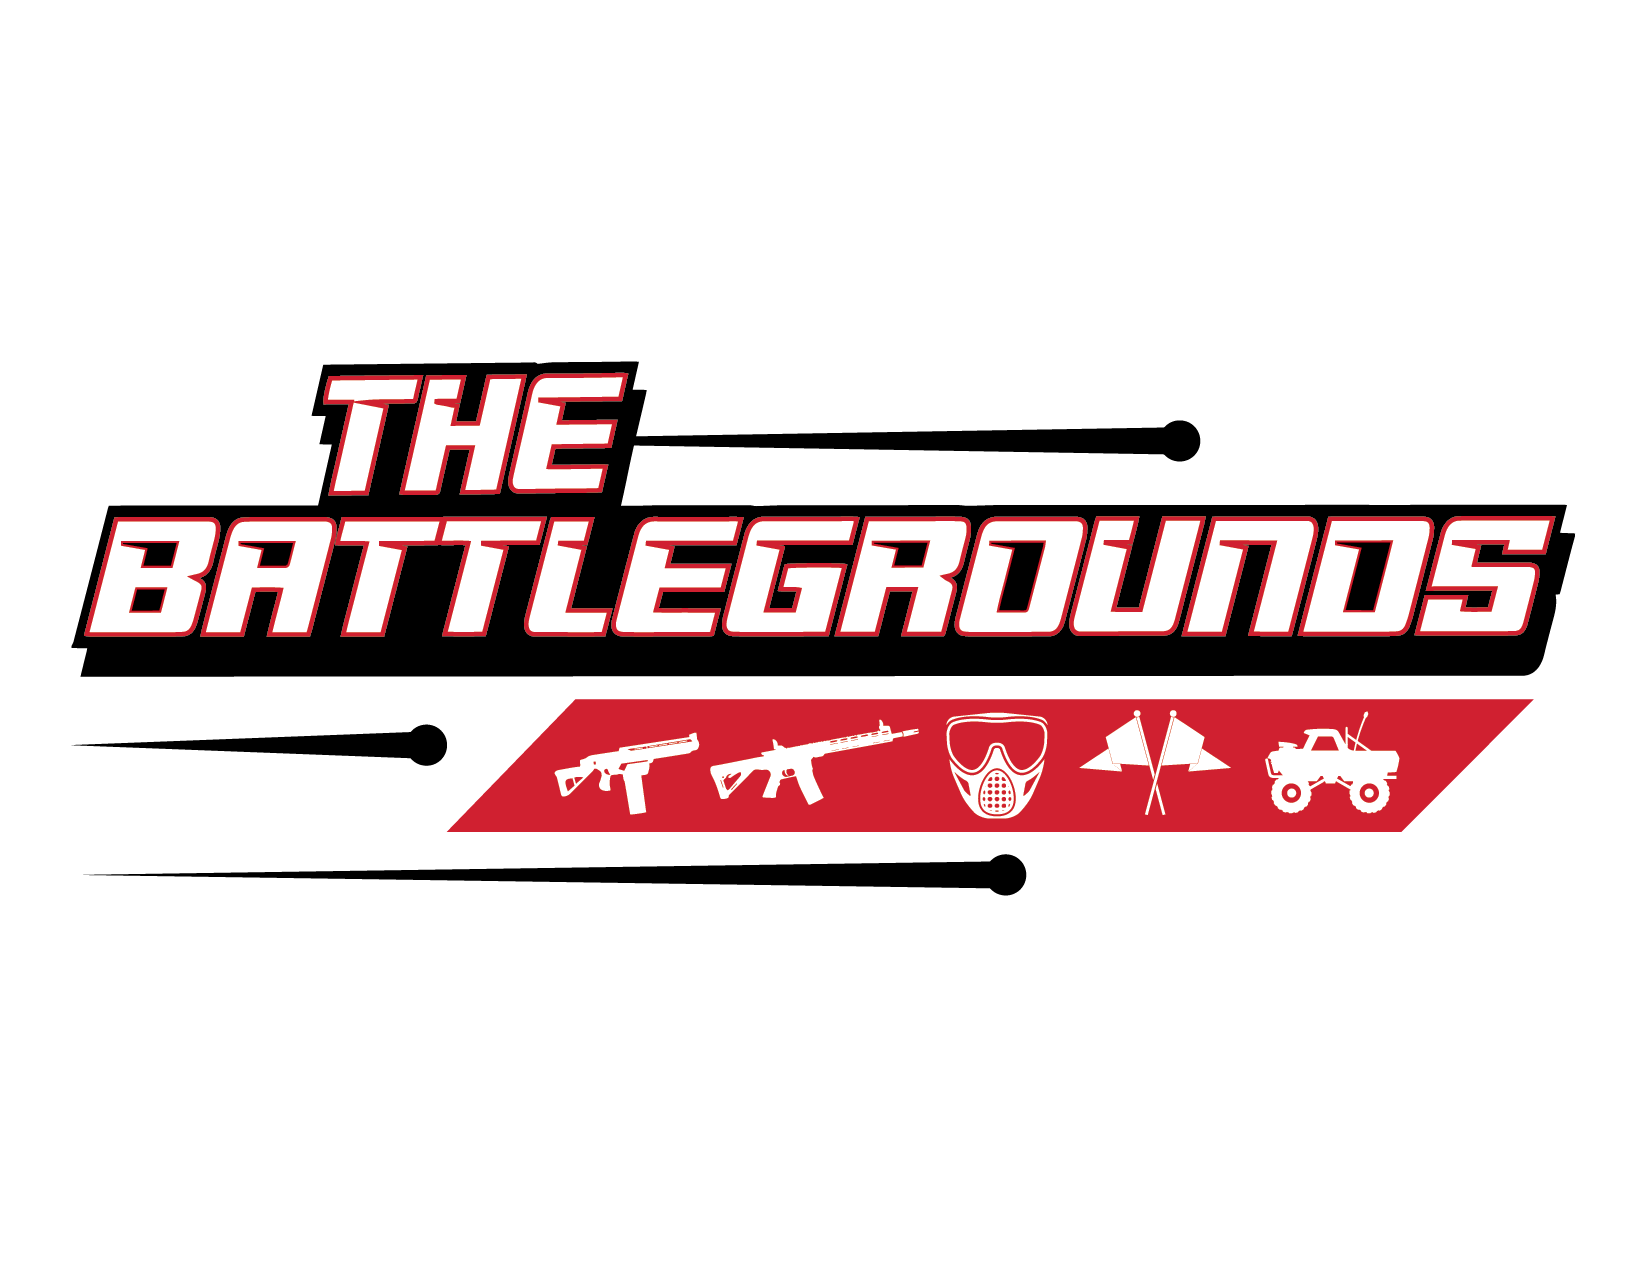 The Battlegrounds